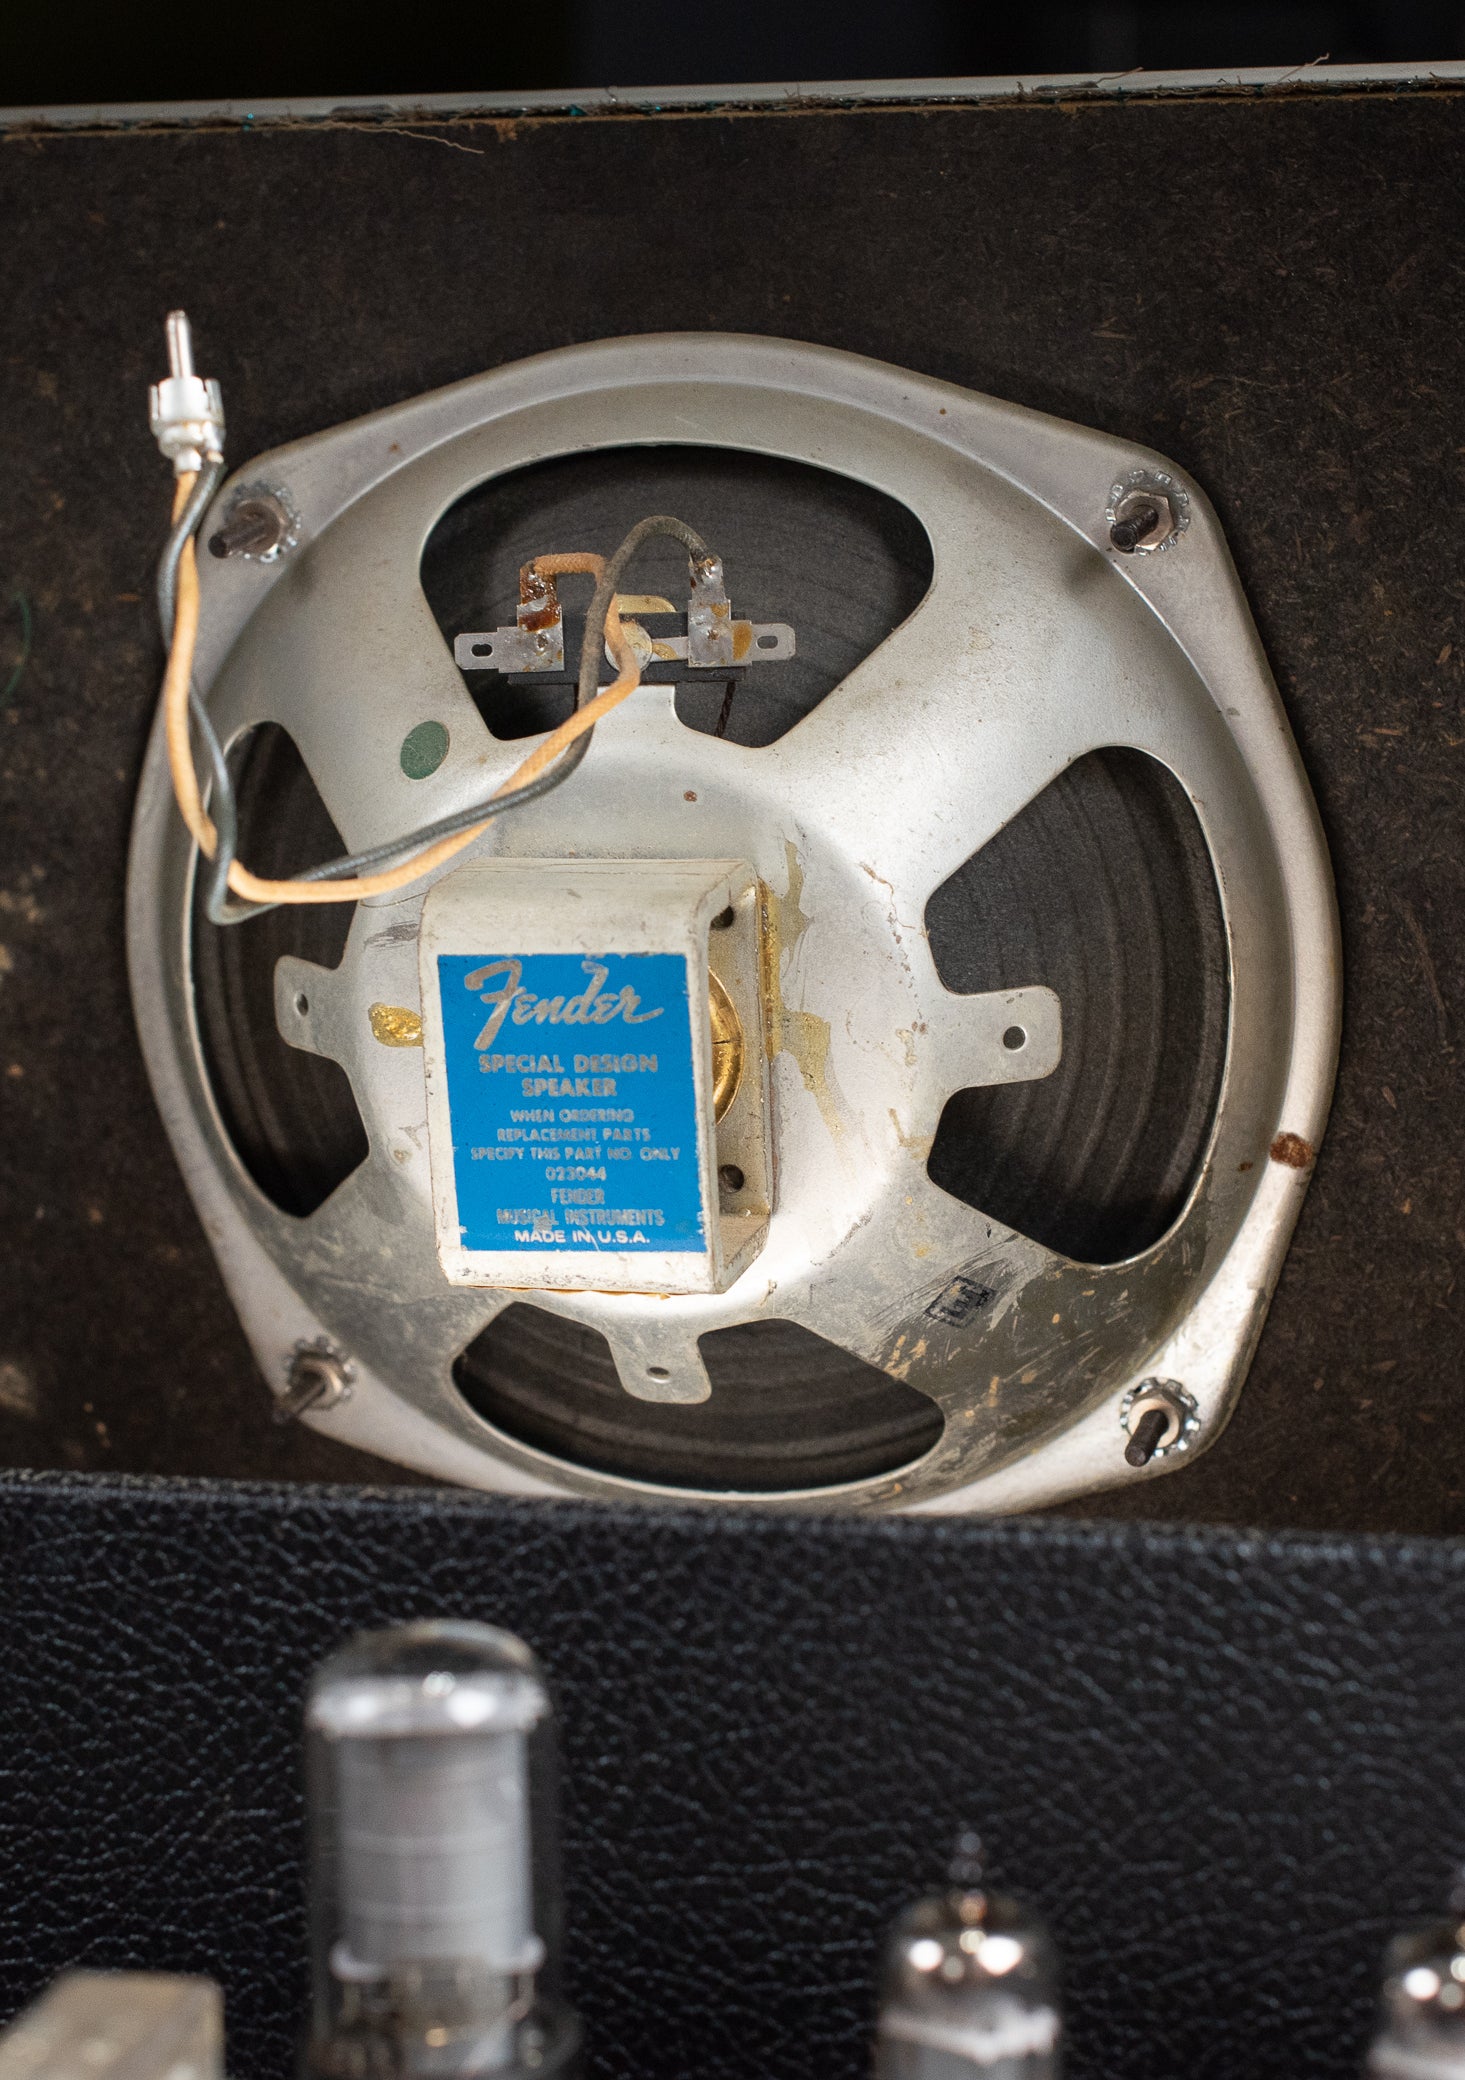 8" Oxford Speaker, 1969 Fender Vibro Champ Amp guitar amplifier